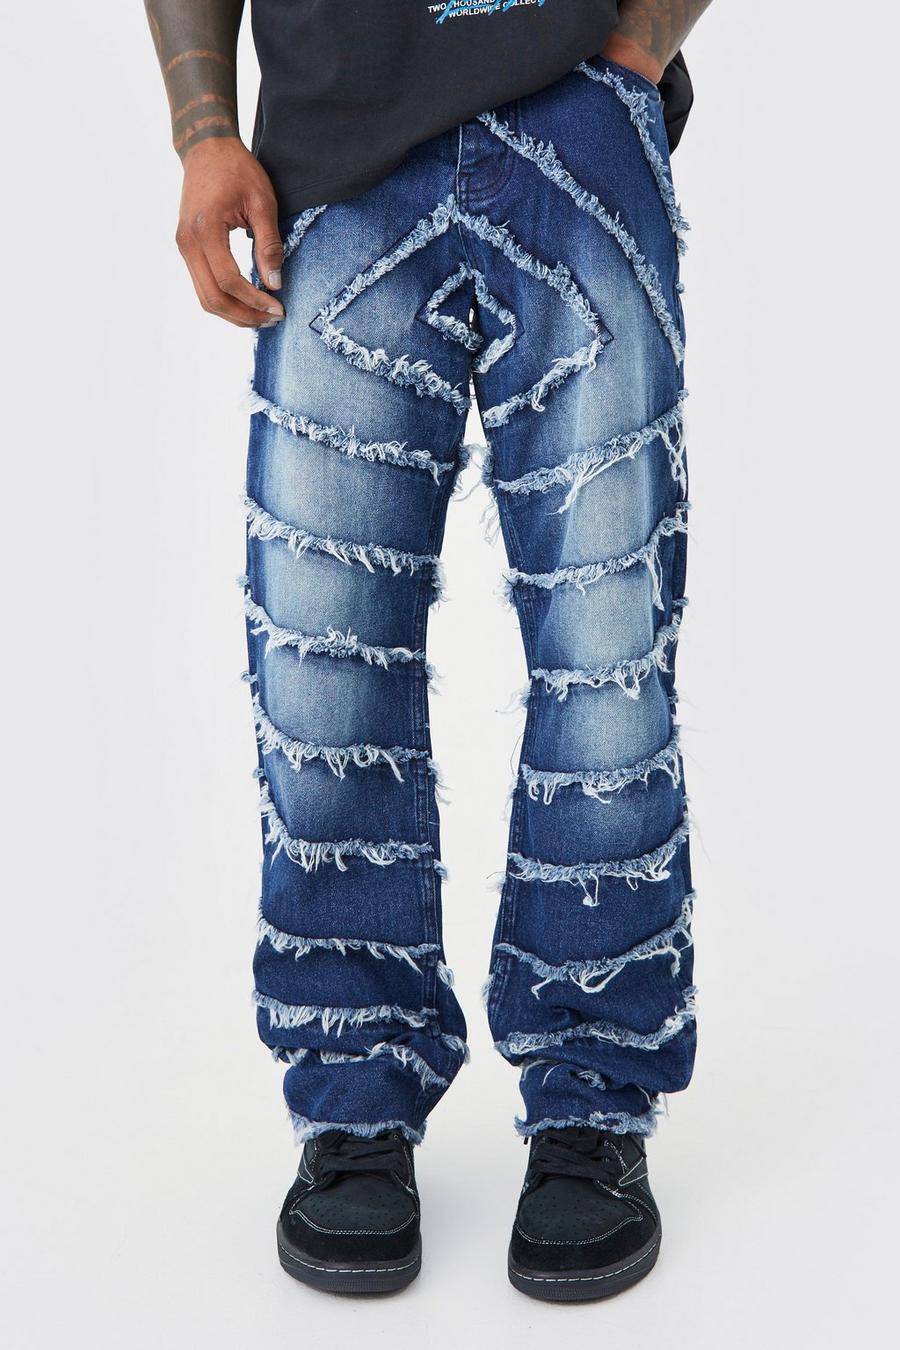 Lockere Jeans mit ausgefranstem Saum, Indigo blau